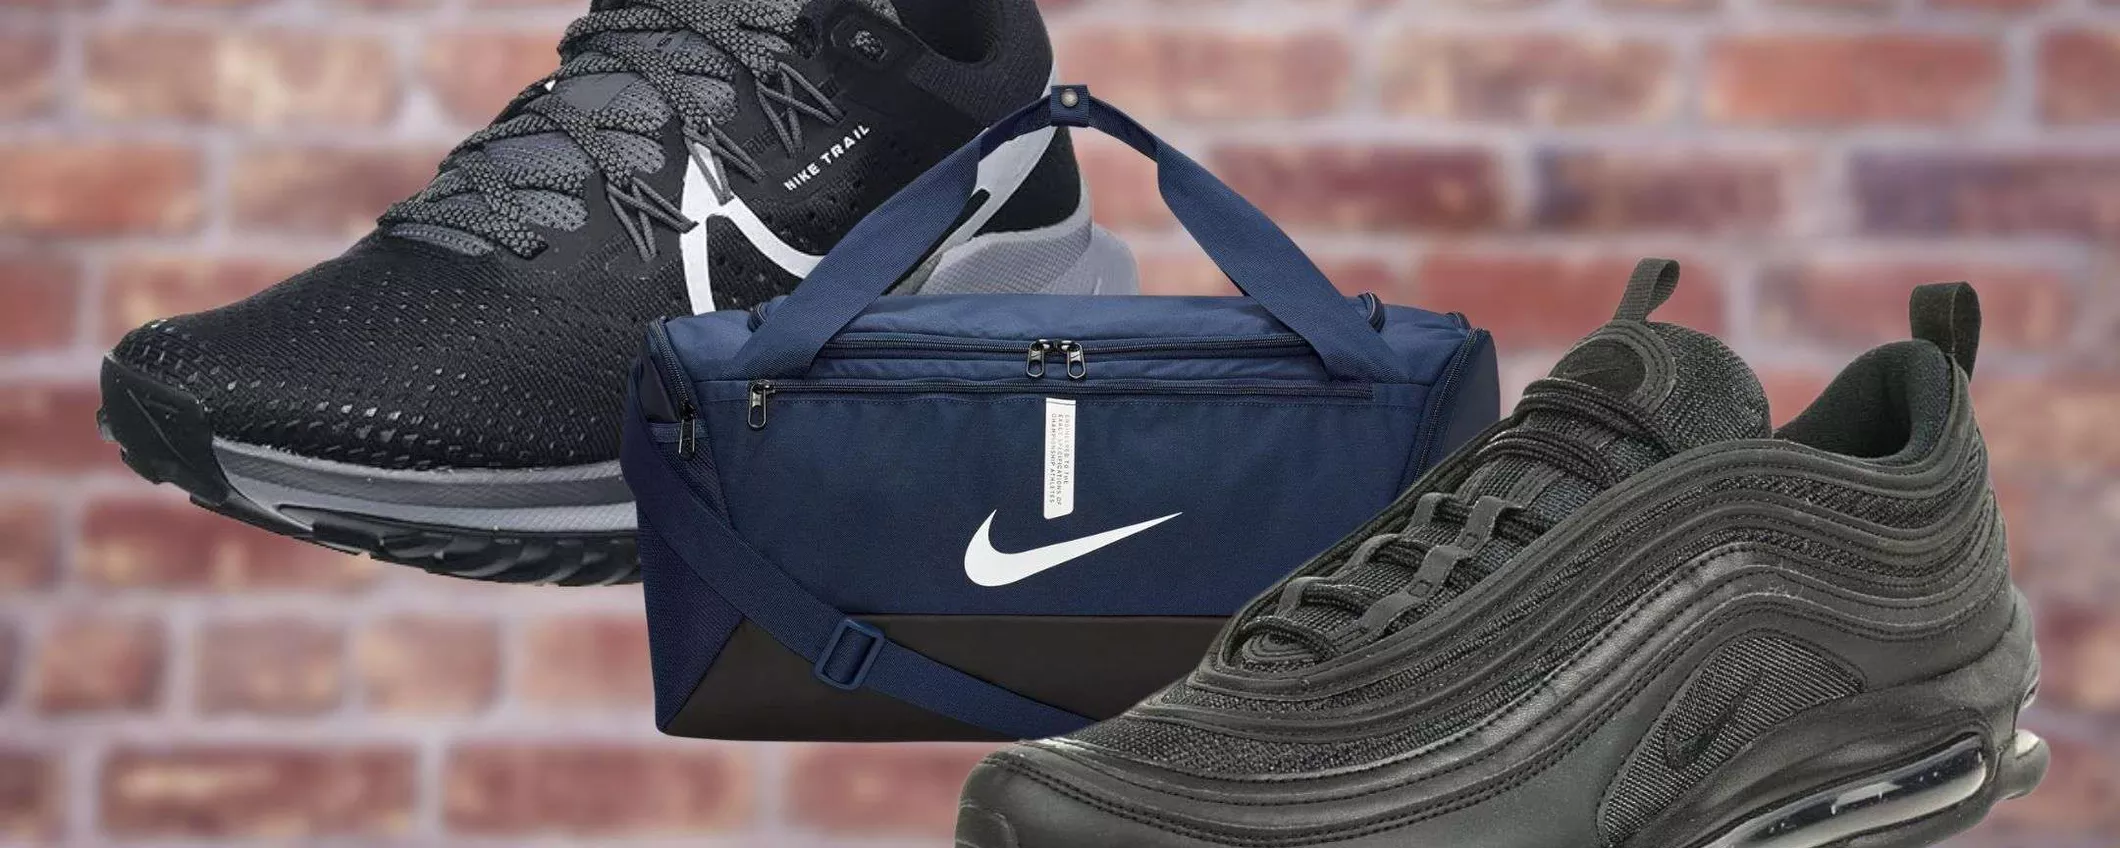 Nike SVENDITA FOLLE su Amazon: scarpe e accessori a prezzo assurdo